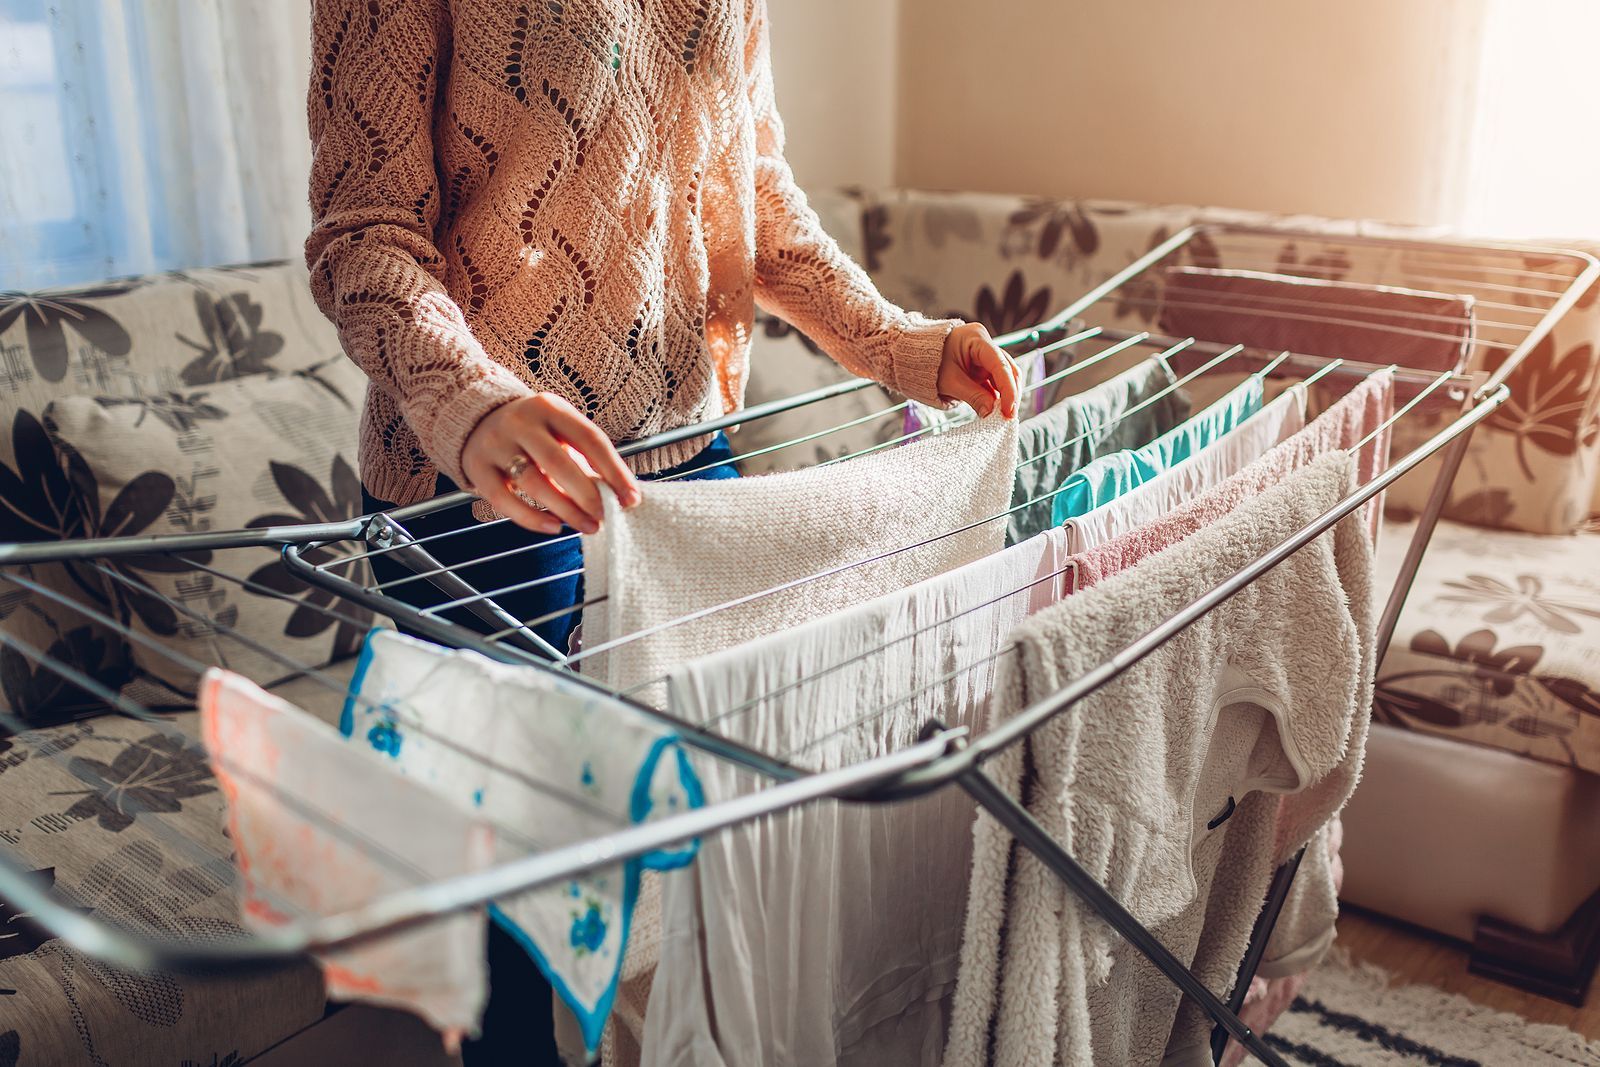 Apunta estos trucos para secar la ropa de forma rápida en invierno